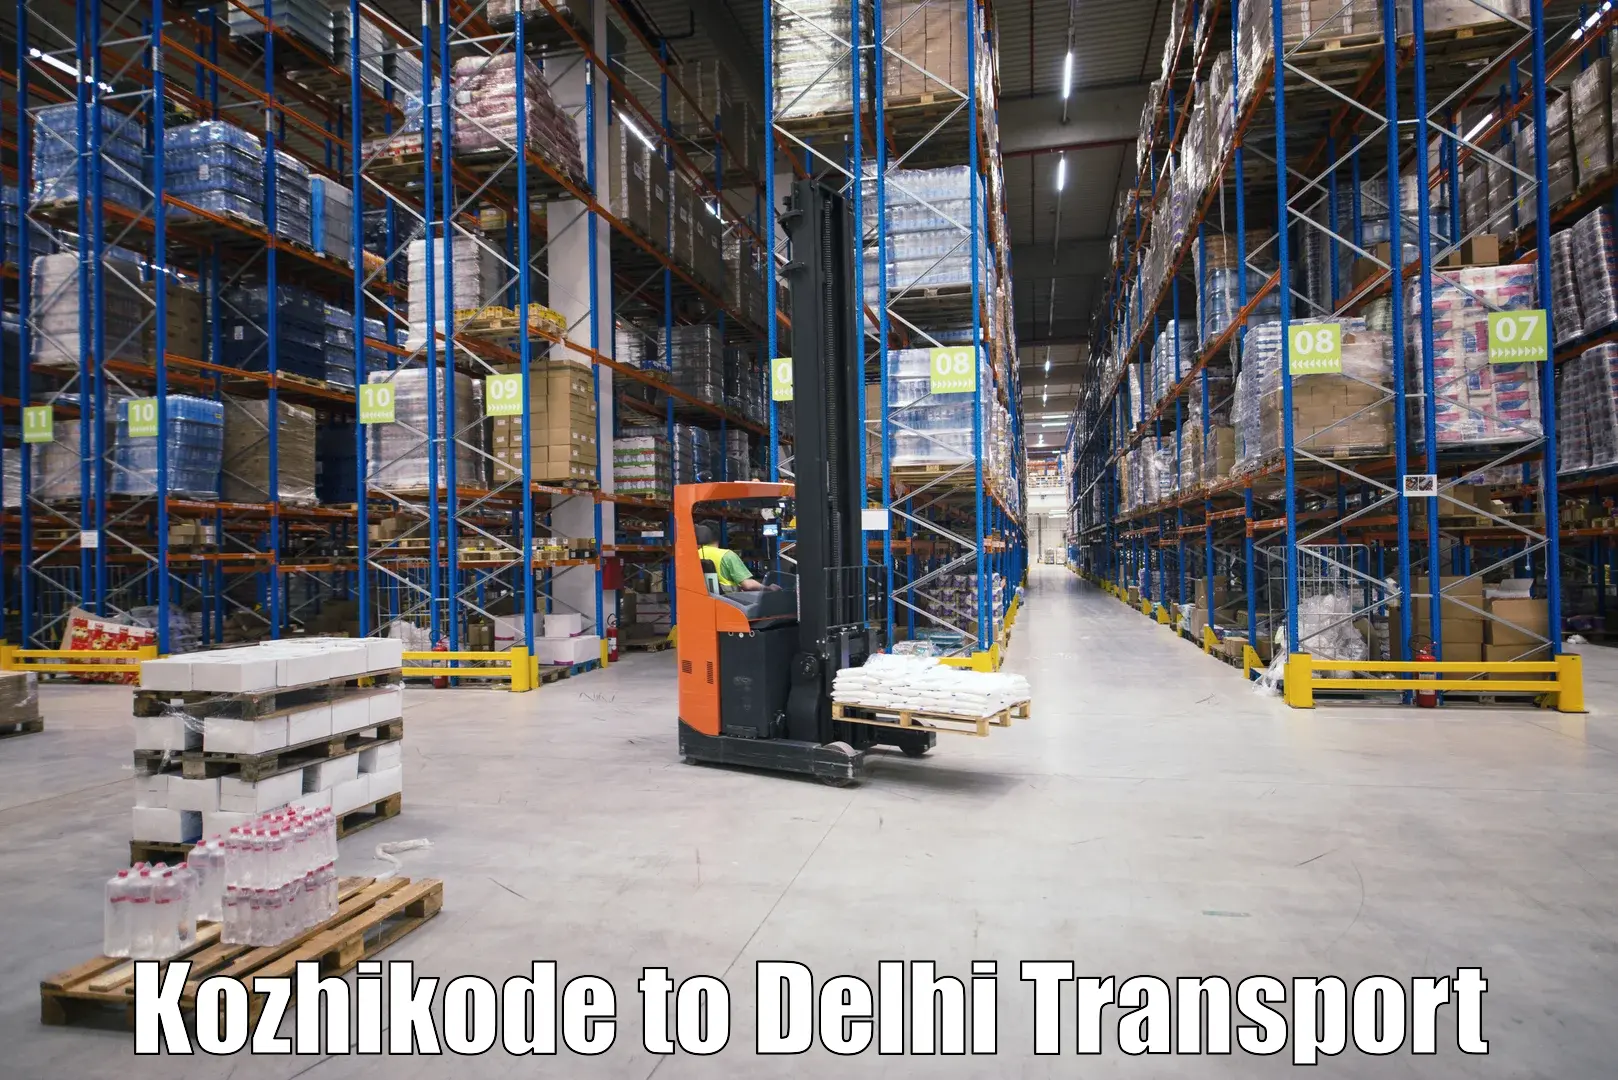 Bike transport service Kozhikode to Delhi